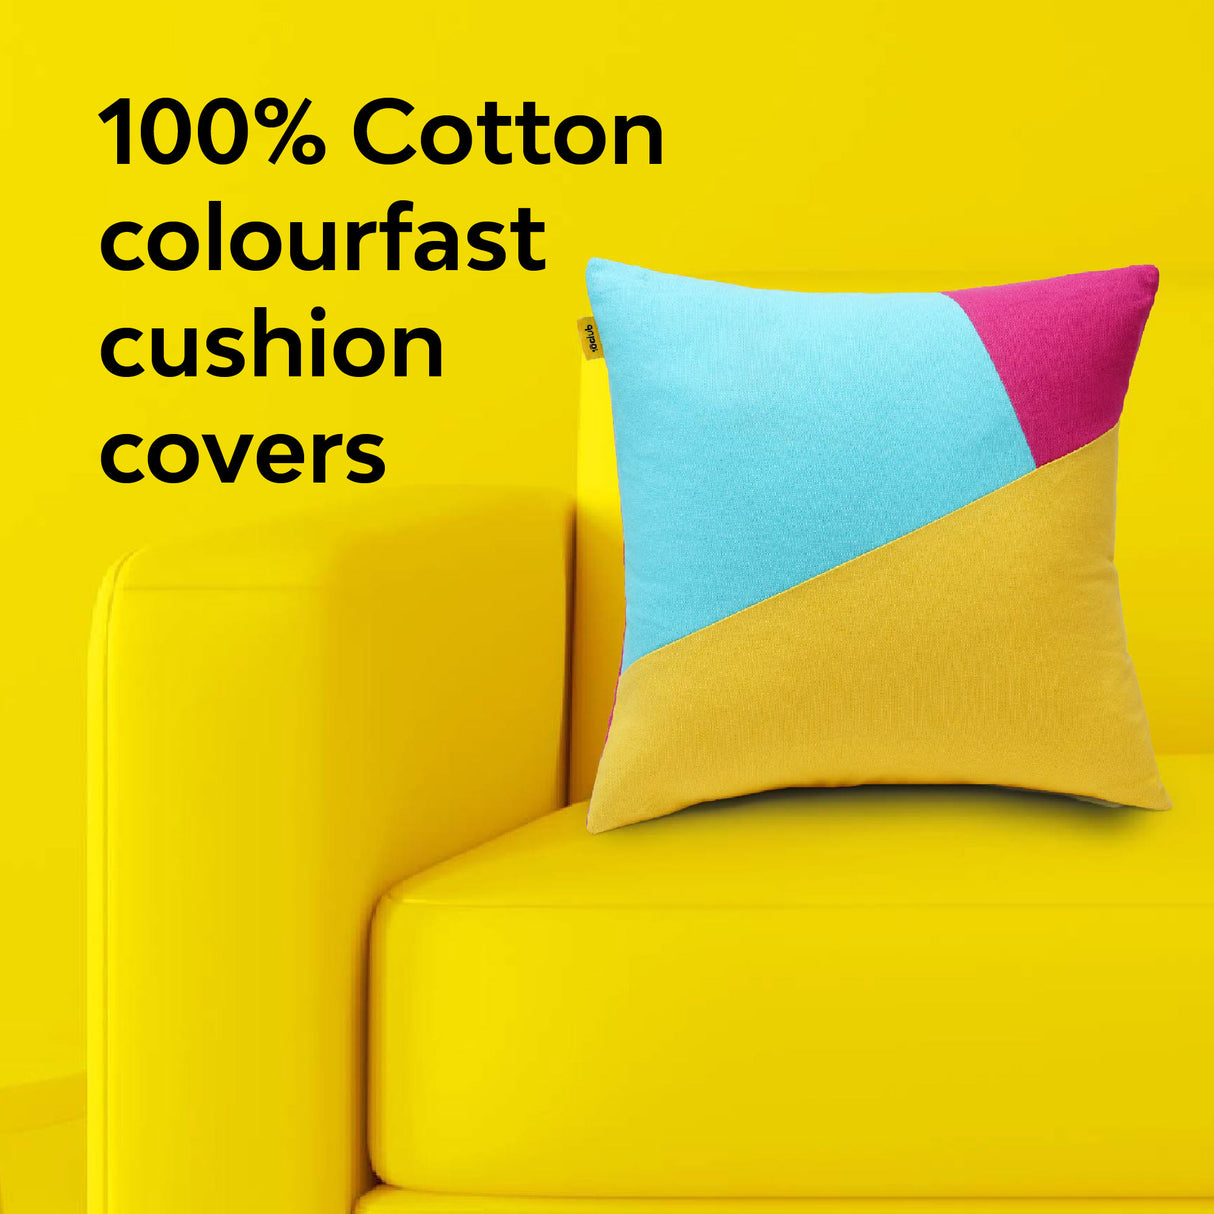 Multi-Colour Geometric Cushion Cover | Single